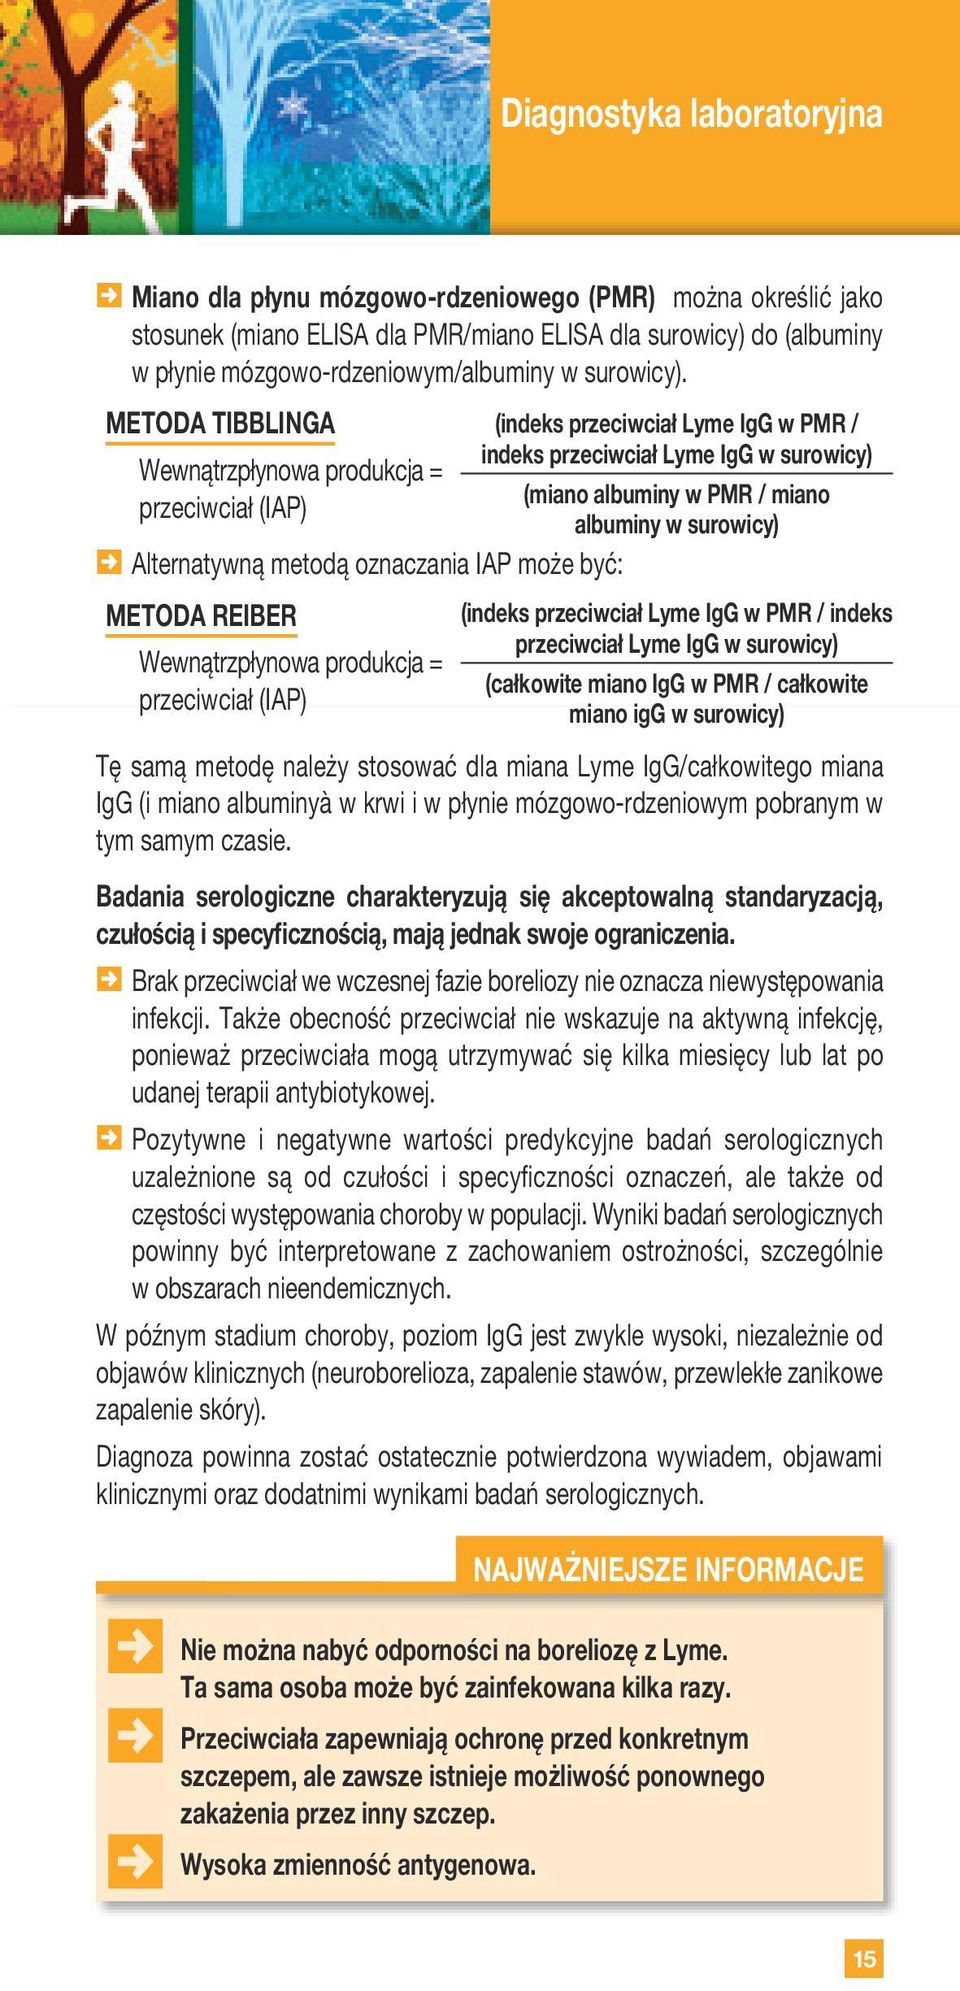 Lyme IgG w PMR / indeks przeciwciał Lyme IgG w surowicy) (miano albuminy w PMR / miano albuminy w surowicy) (indeks przeciwciał Lyme IgG w PMR / indeks przeciwciał Lyme IgG w surowicy) (całkowite